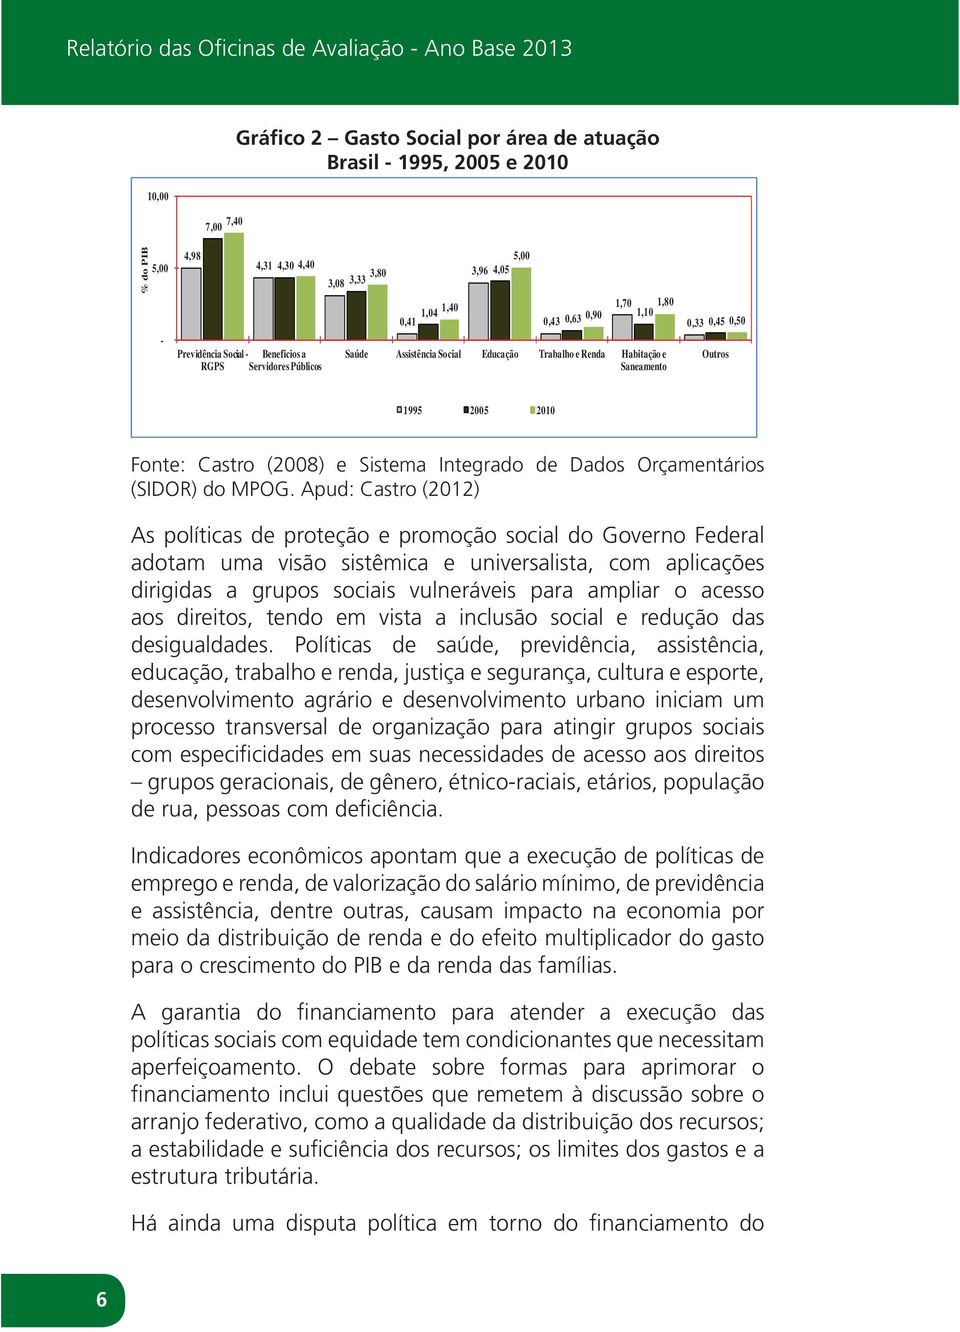 0,50 Outros 1995 2005 2010 Fonte: Castro (2008) e Sistema Integrado de Dados Orçamentários (SIDOR) do MPOG.